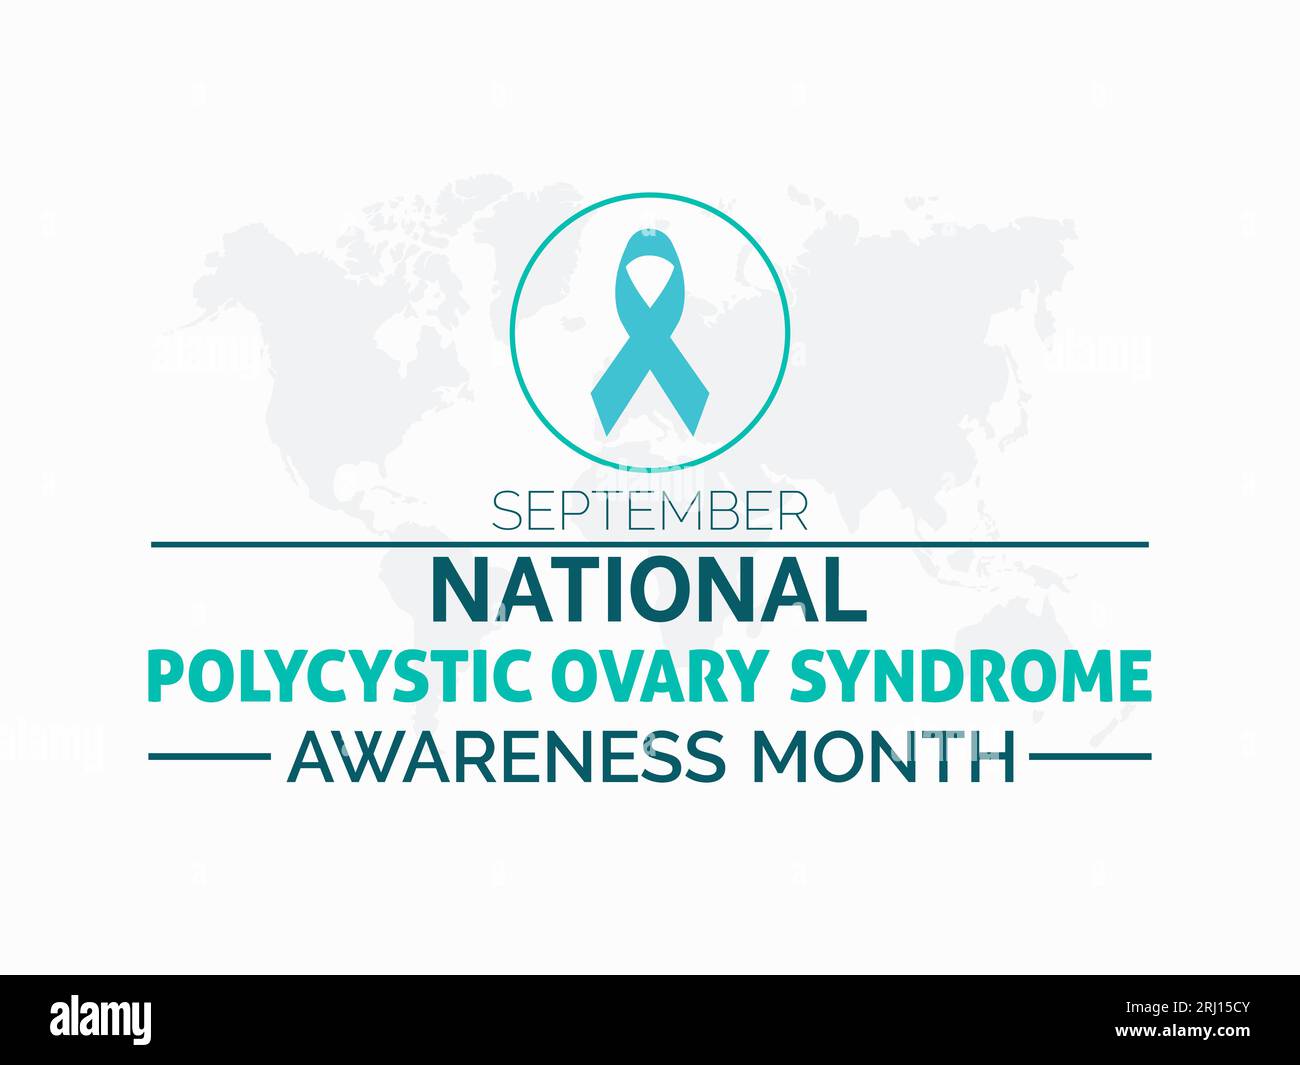 National Polycystic Ovary Syndrome (PCOS) Awareness Month setzt sich für Bildung, Unterstützung und Wellness ein. Frauengesundheit Vektor Illustration Banner templa Stock Vektor